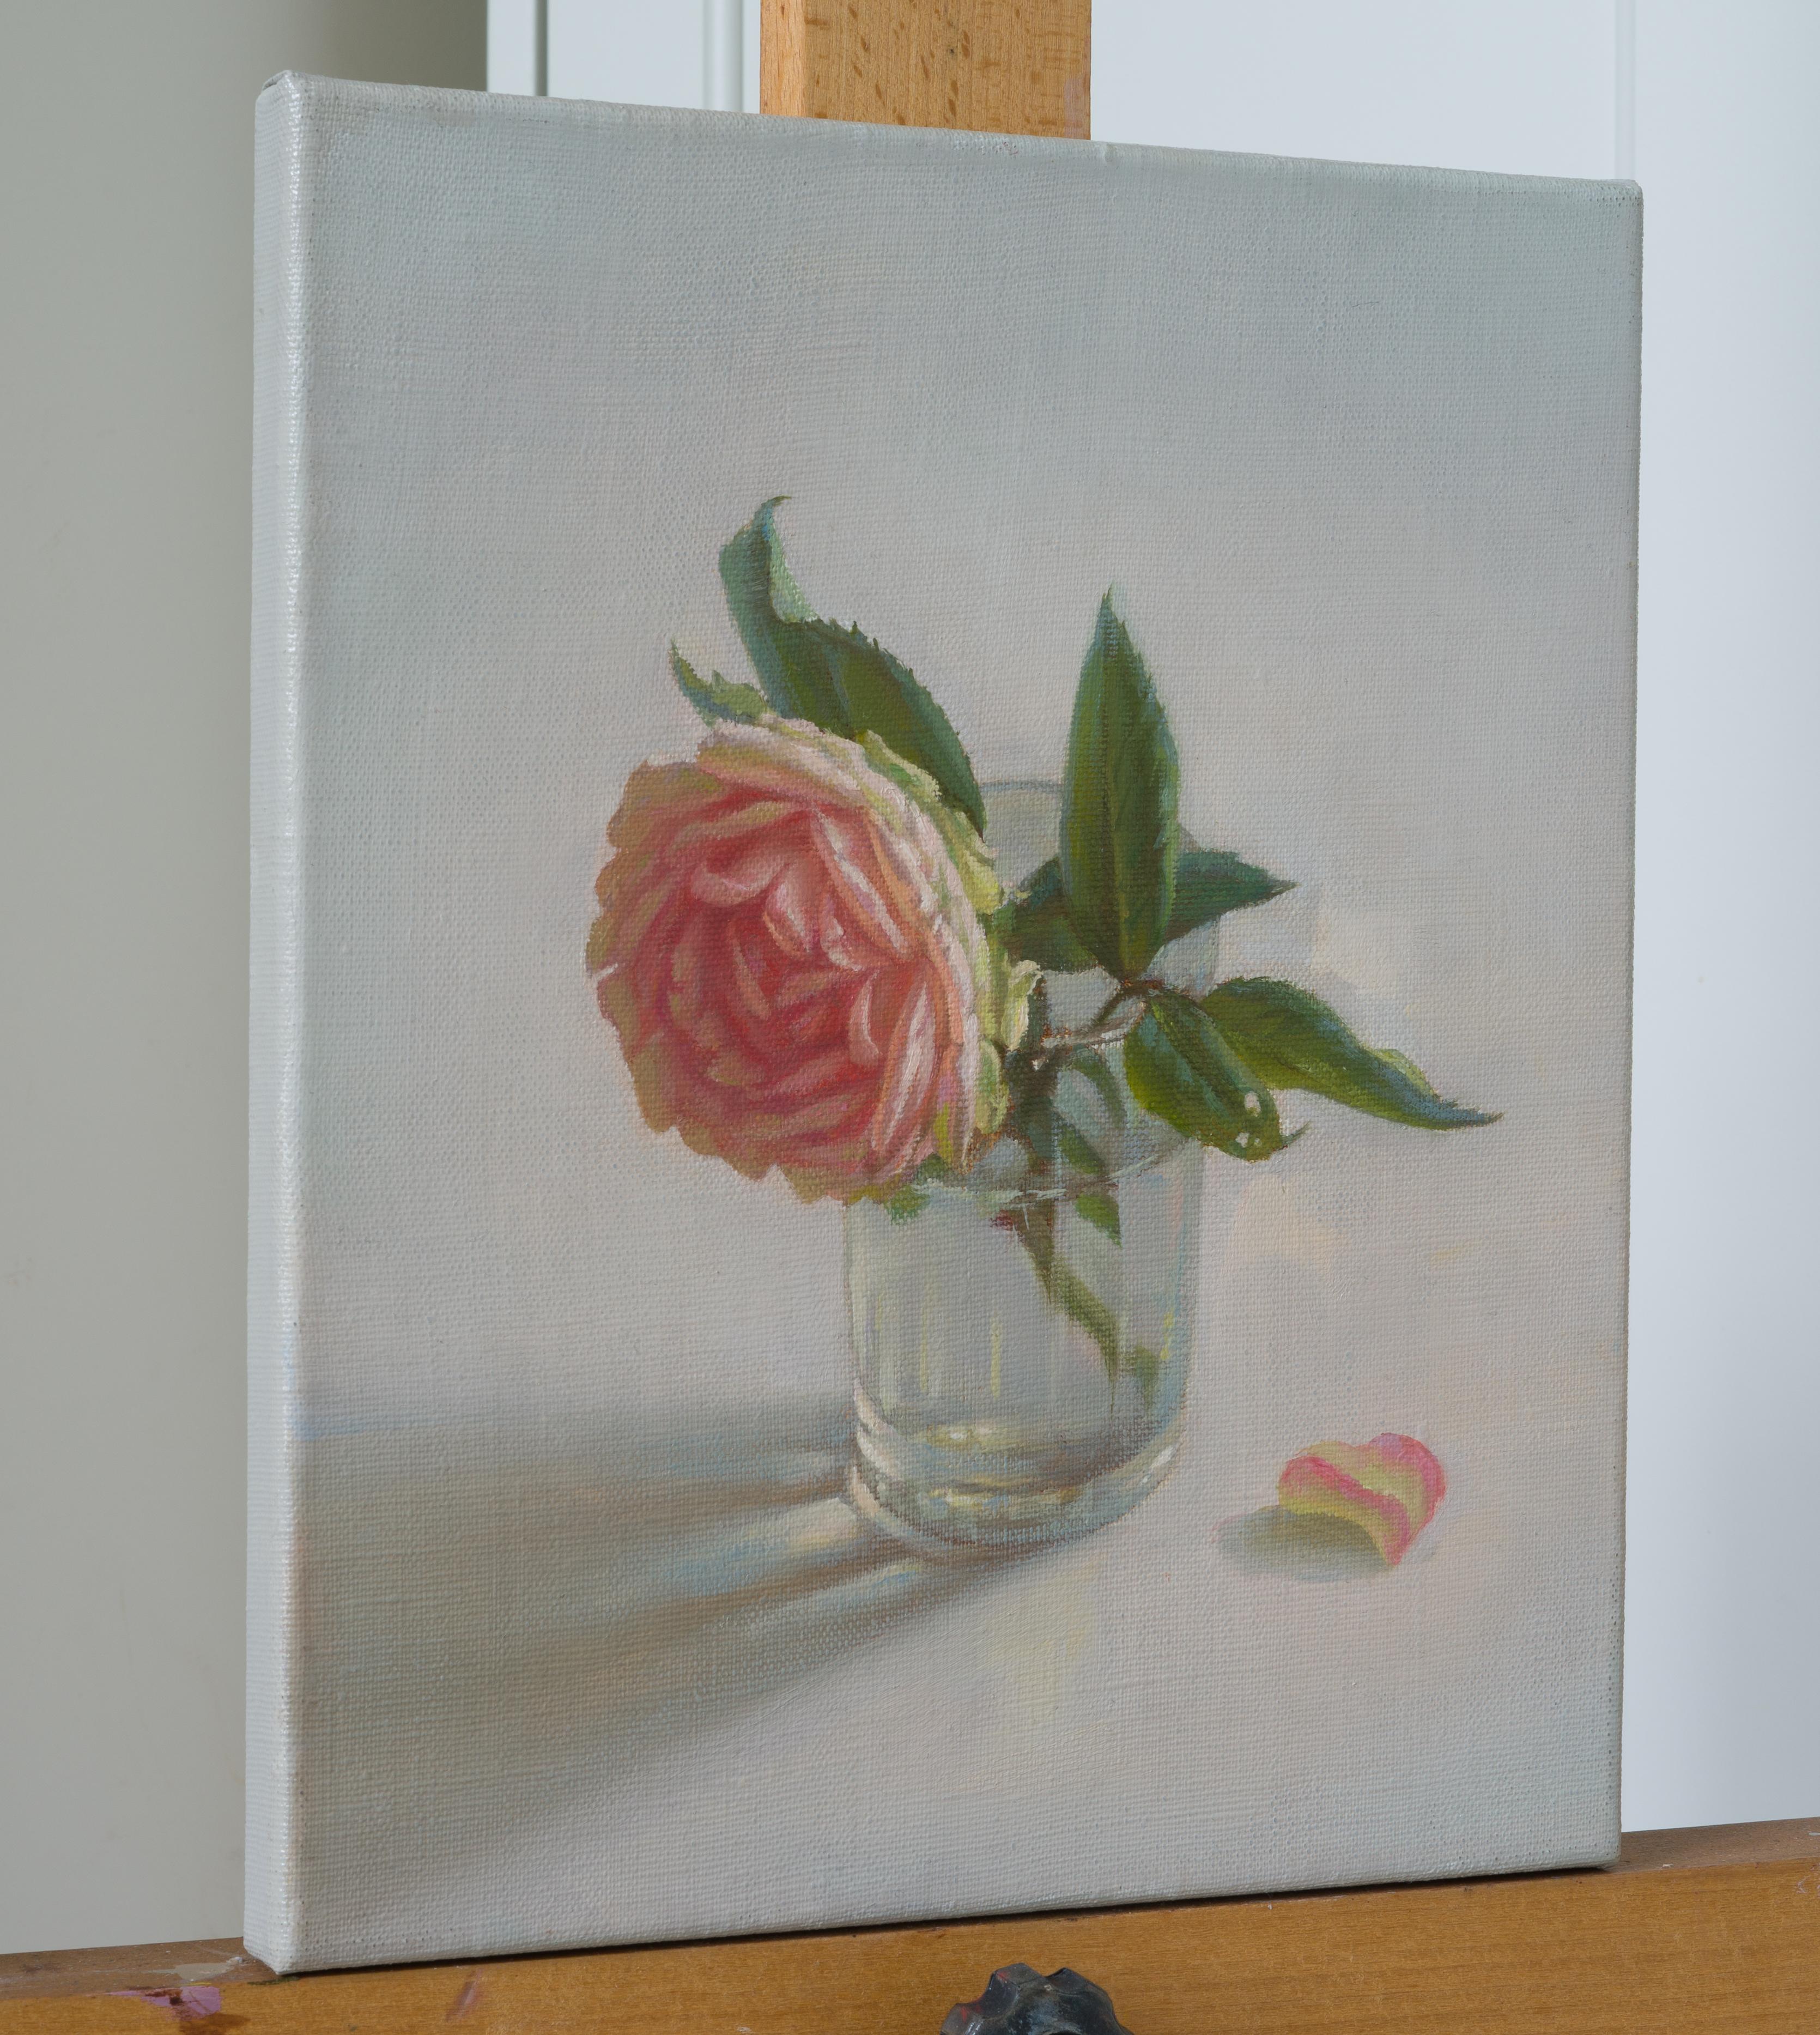 What the rose tell me - Painting by Irina Trushkova